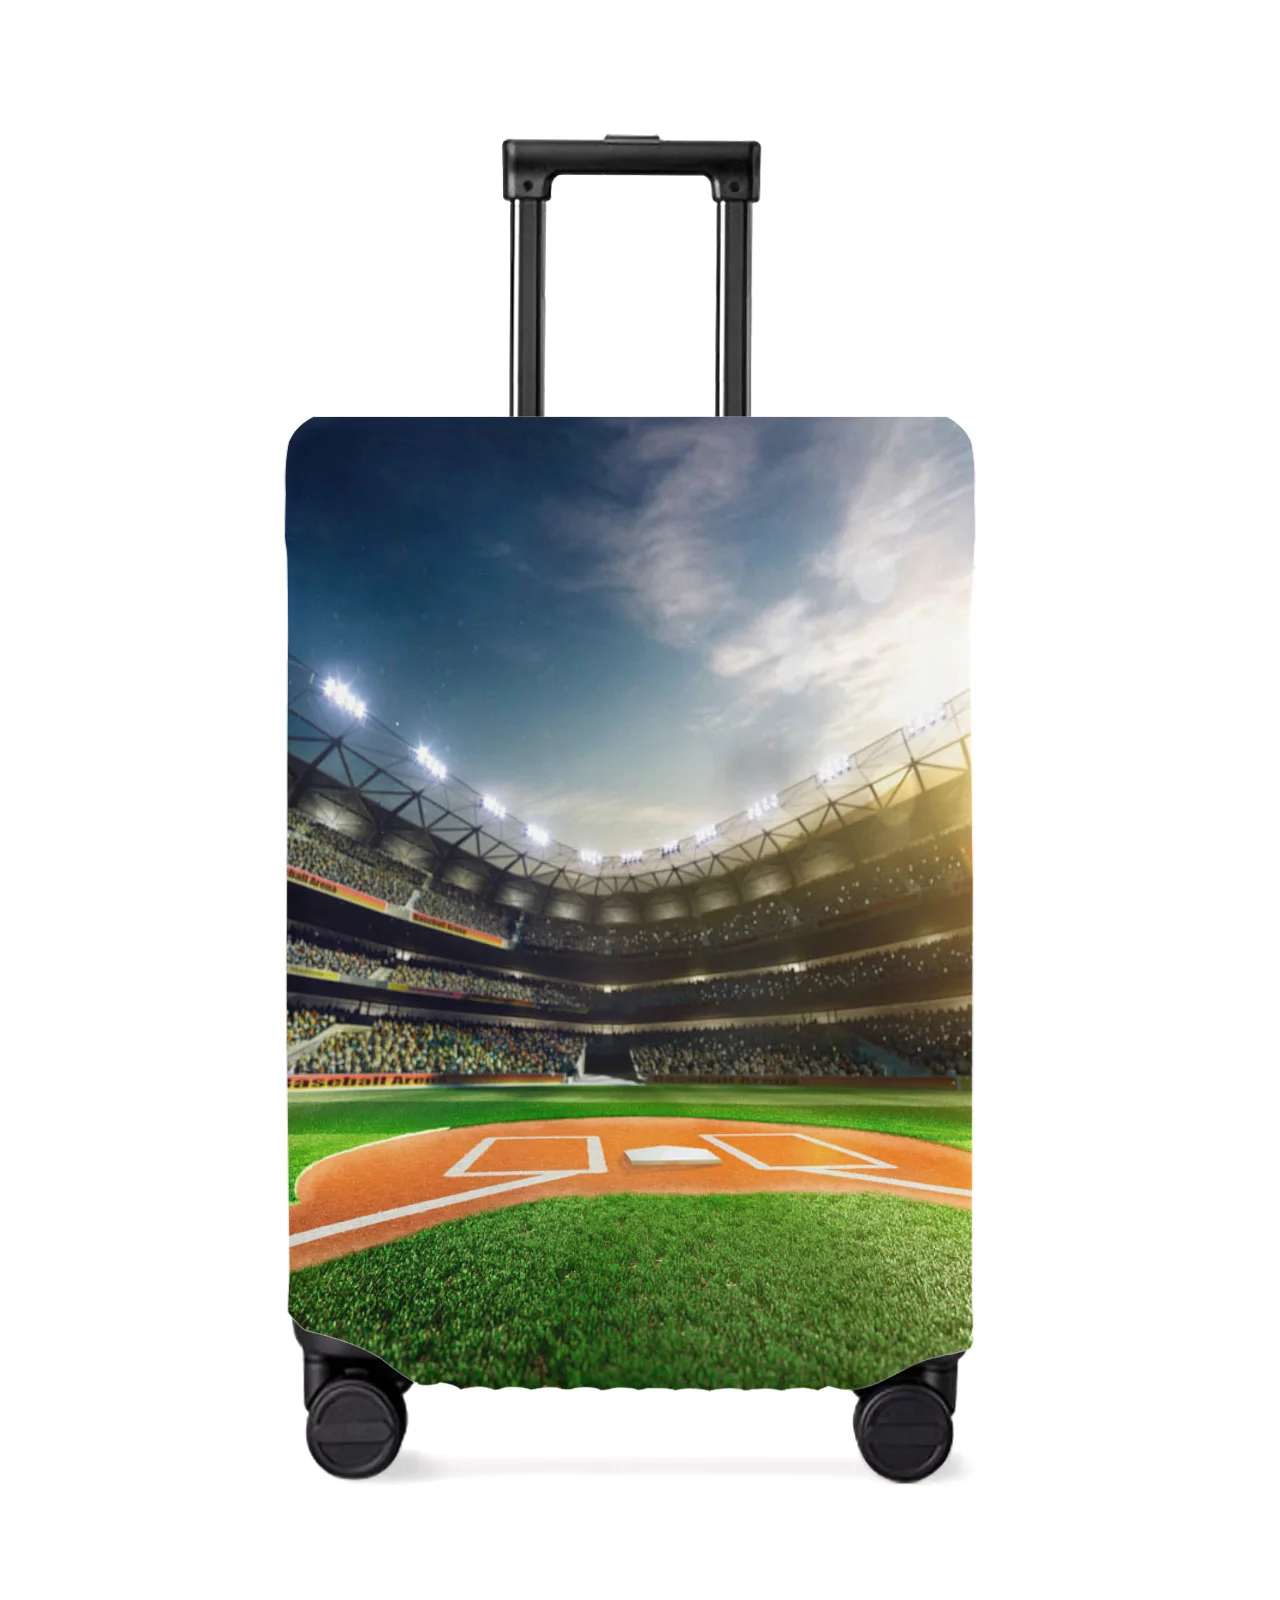 juste-de-protection-elastique-pour-bagages-etui-anti-poussiere-manchon-de-protection-vert-vert-spectateur-de-terrain-de-football-accessoires-de-voyage-valise